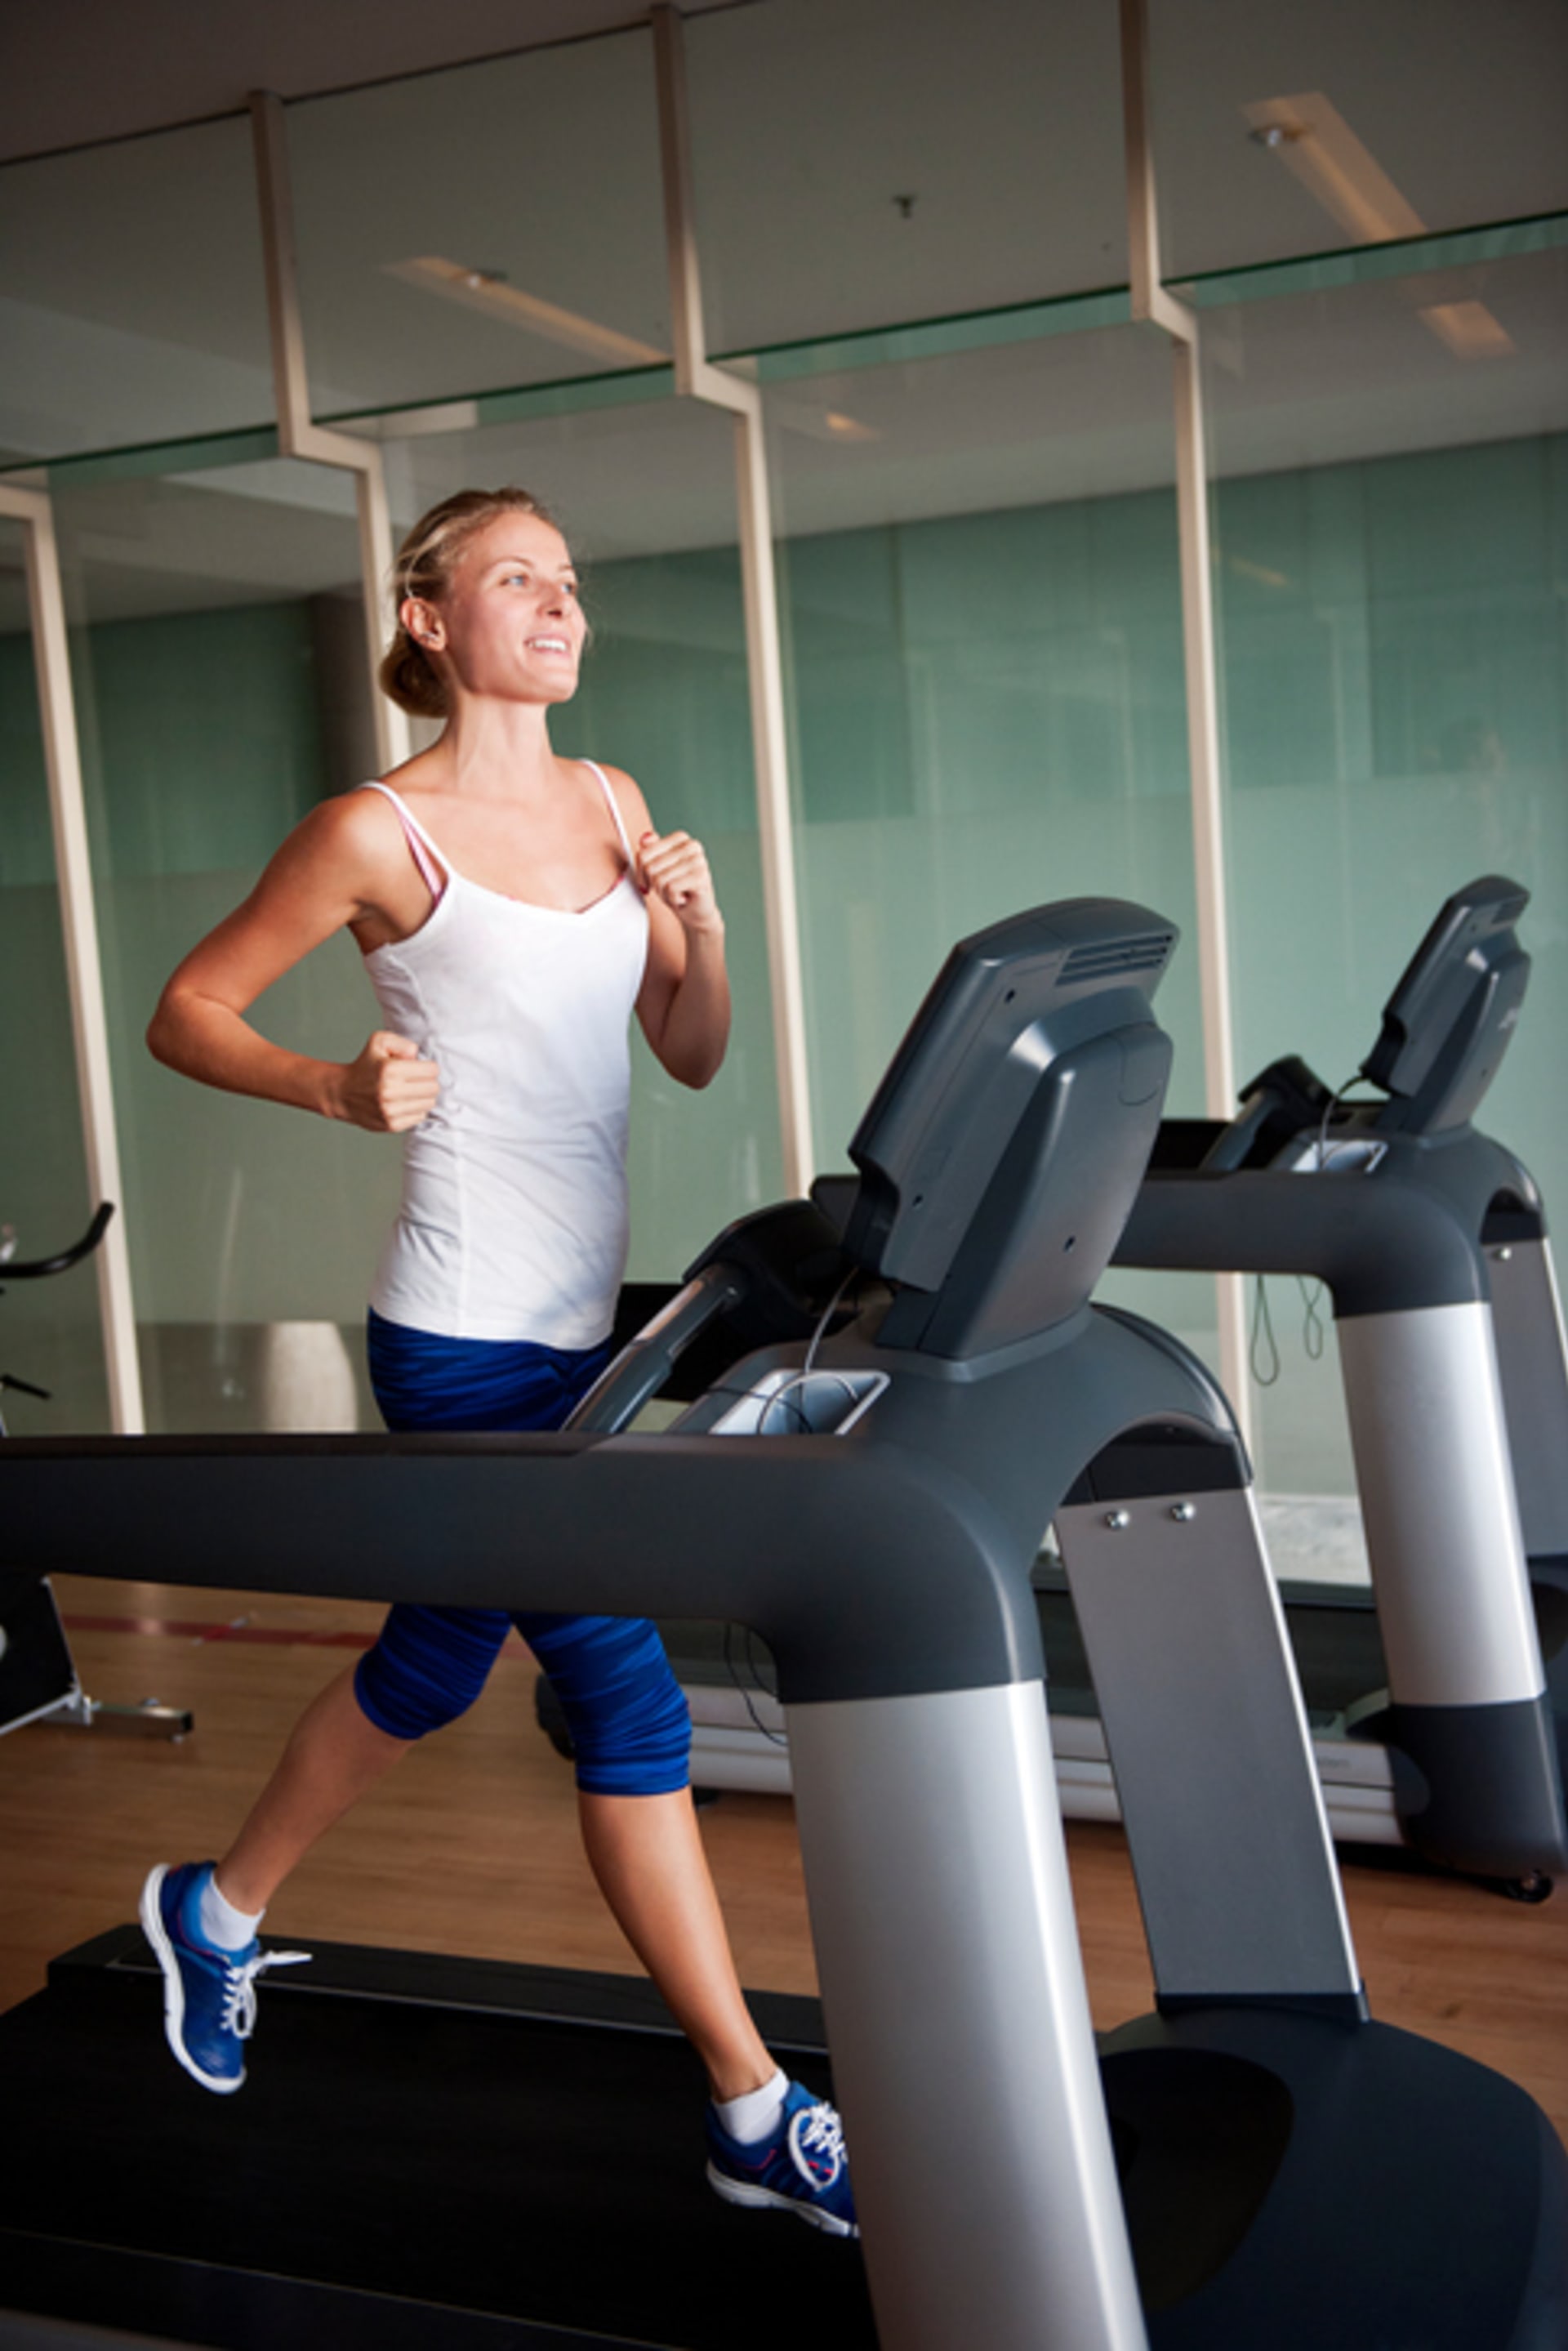 6 chyb při cvičení, kvůli kterým se vám stále nedaří zhubnout mco kardia